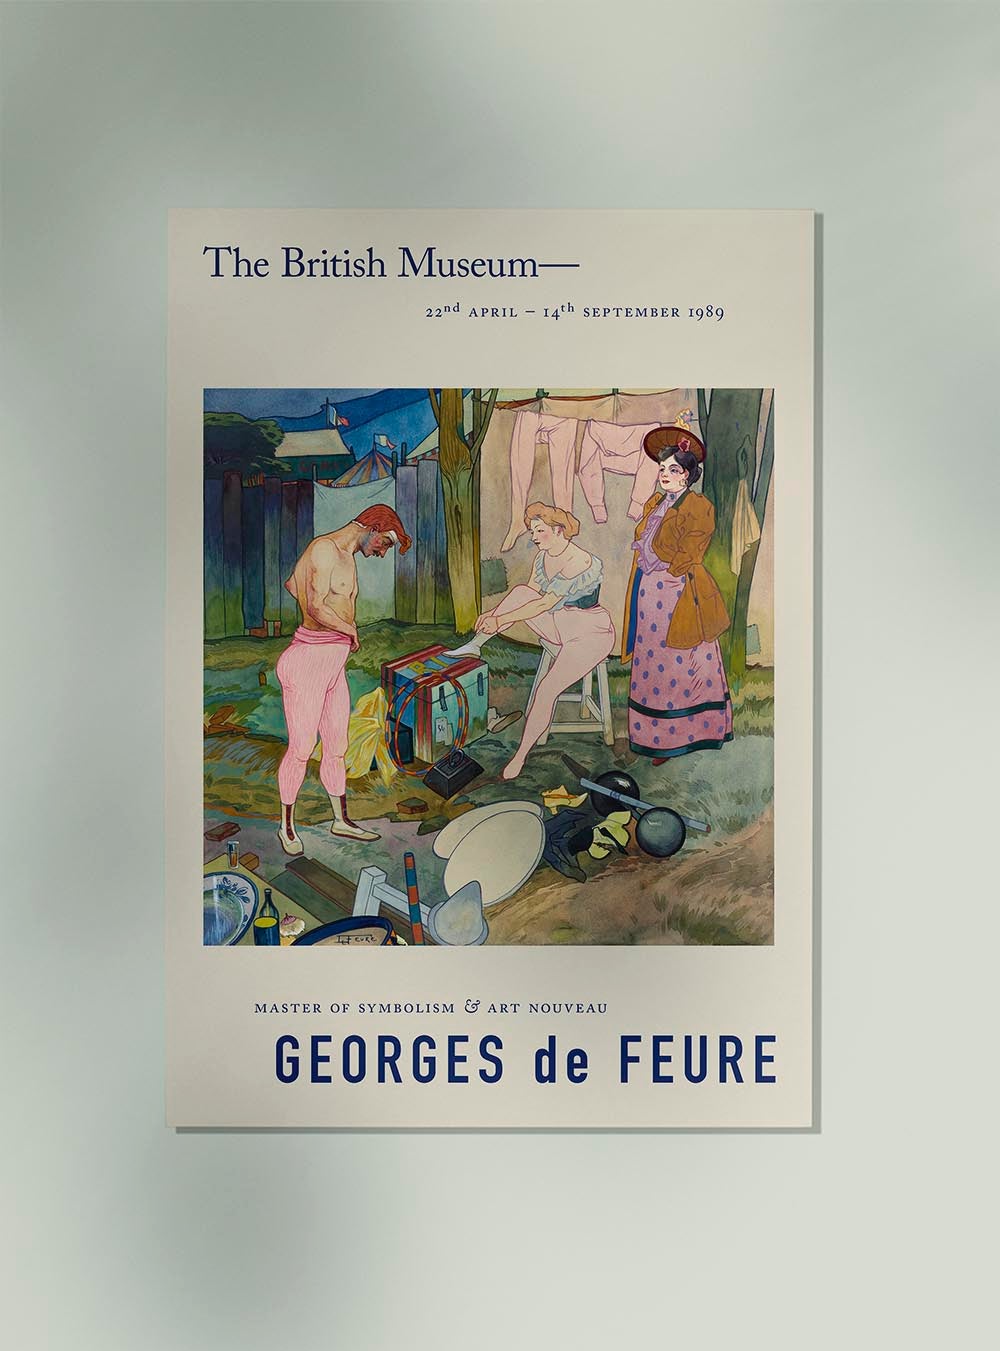 Georges de Feure Le Cirque Corvi Exhibition Poster